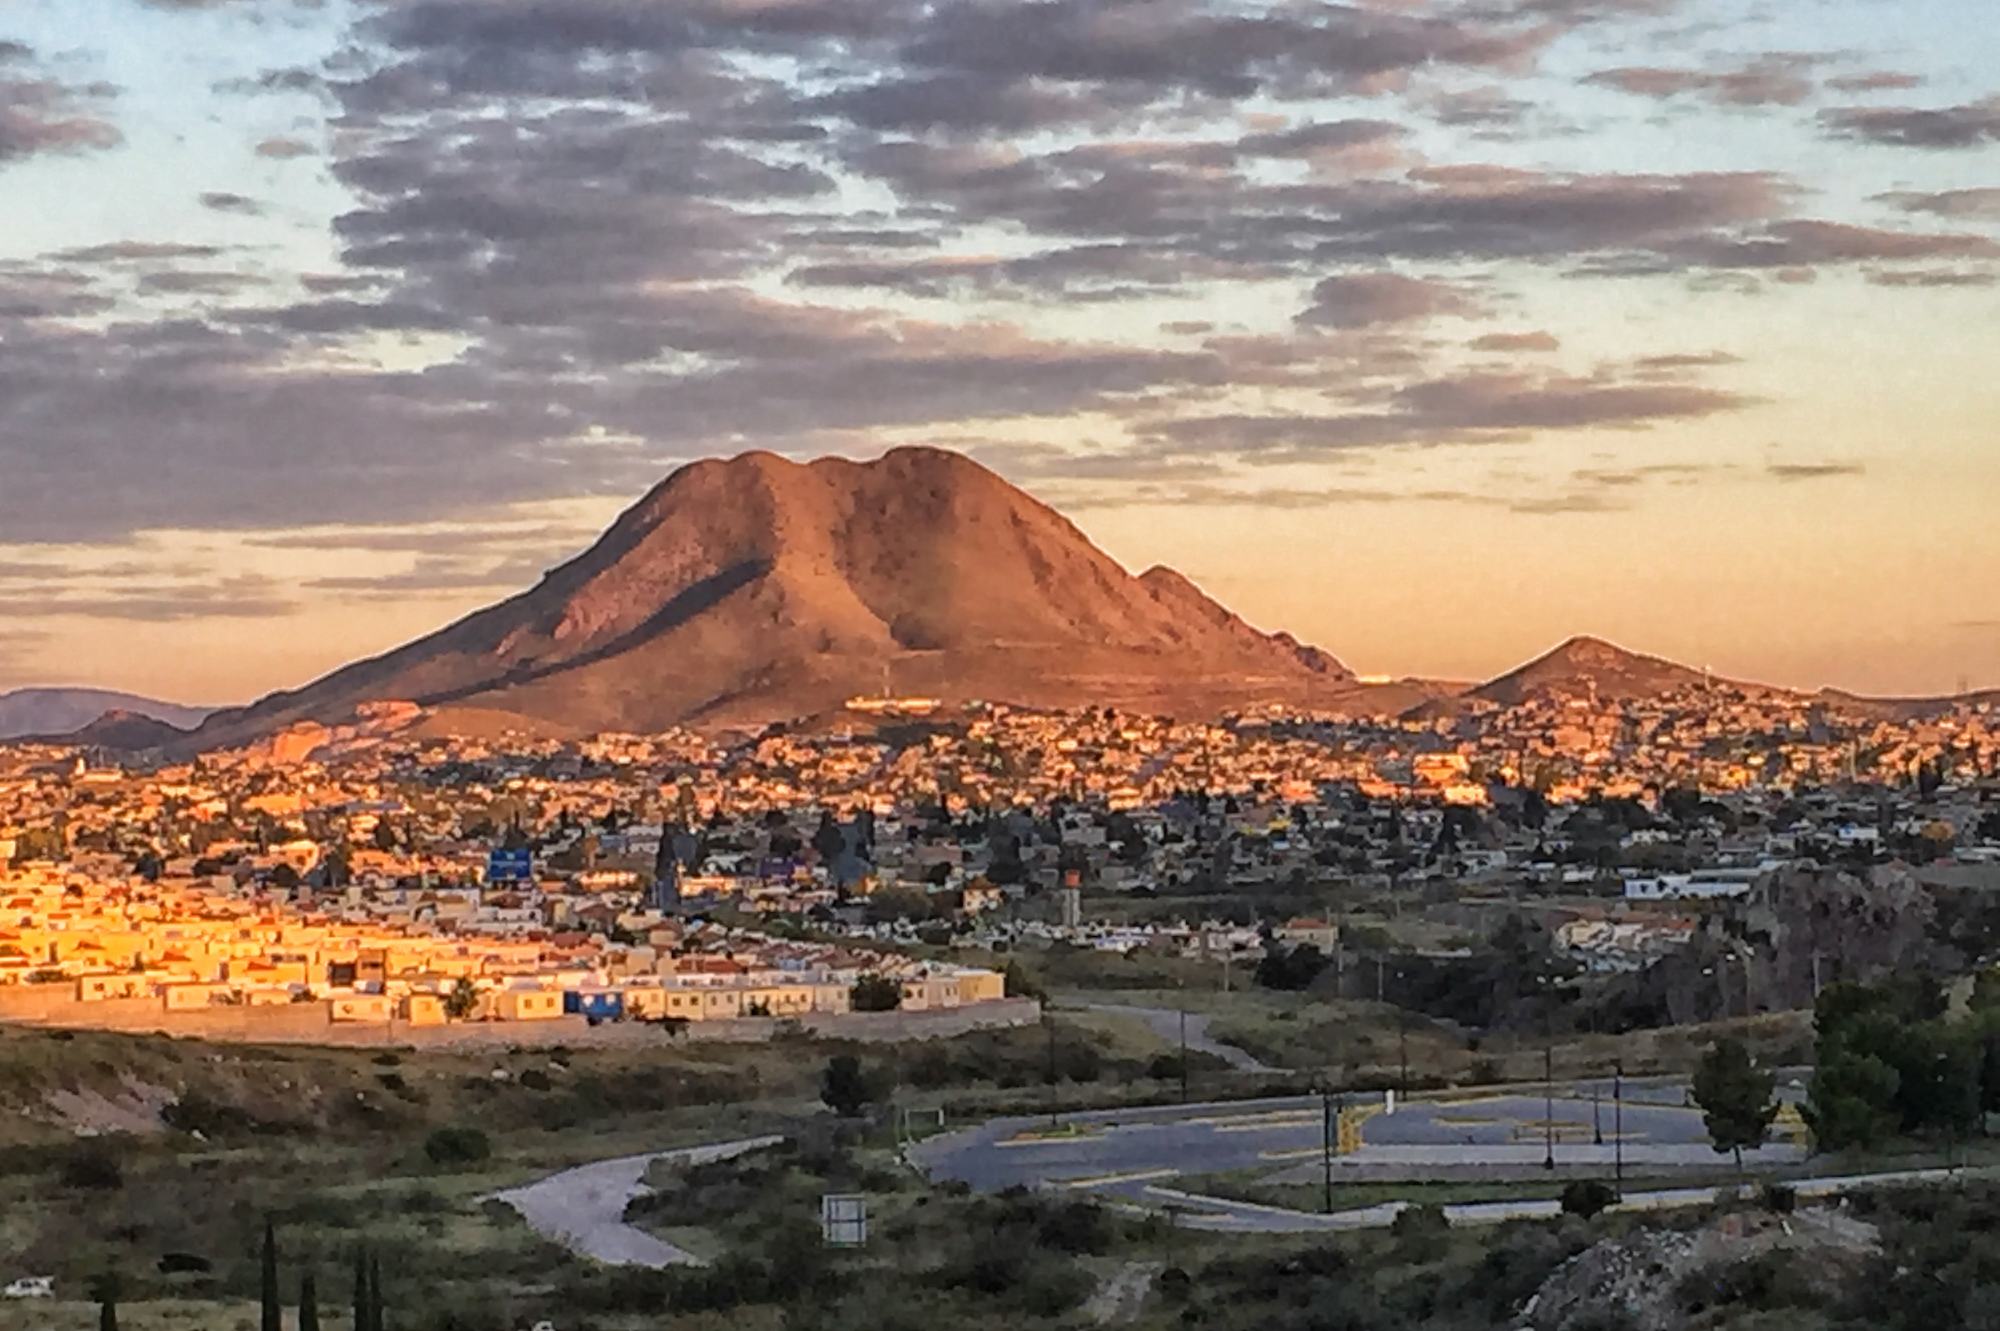 Chihuahua city, Mexico